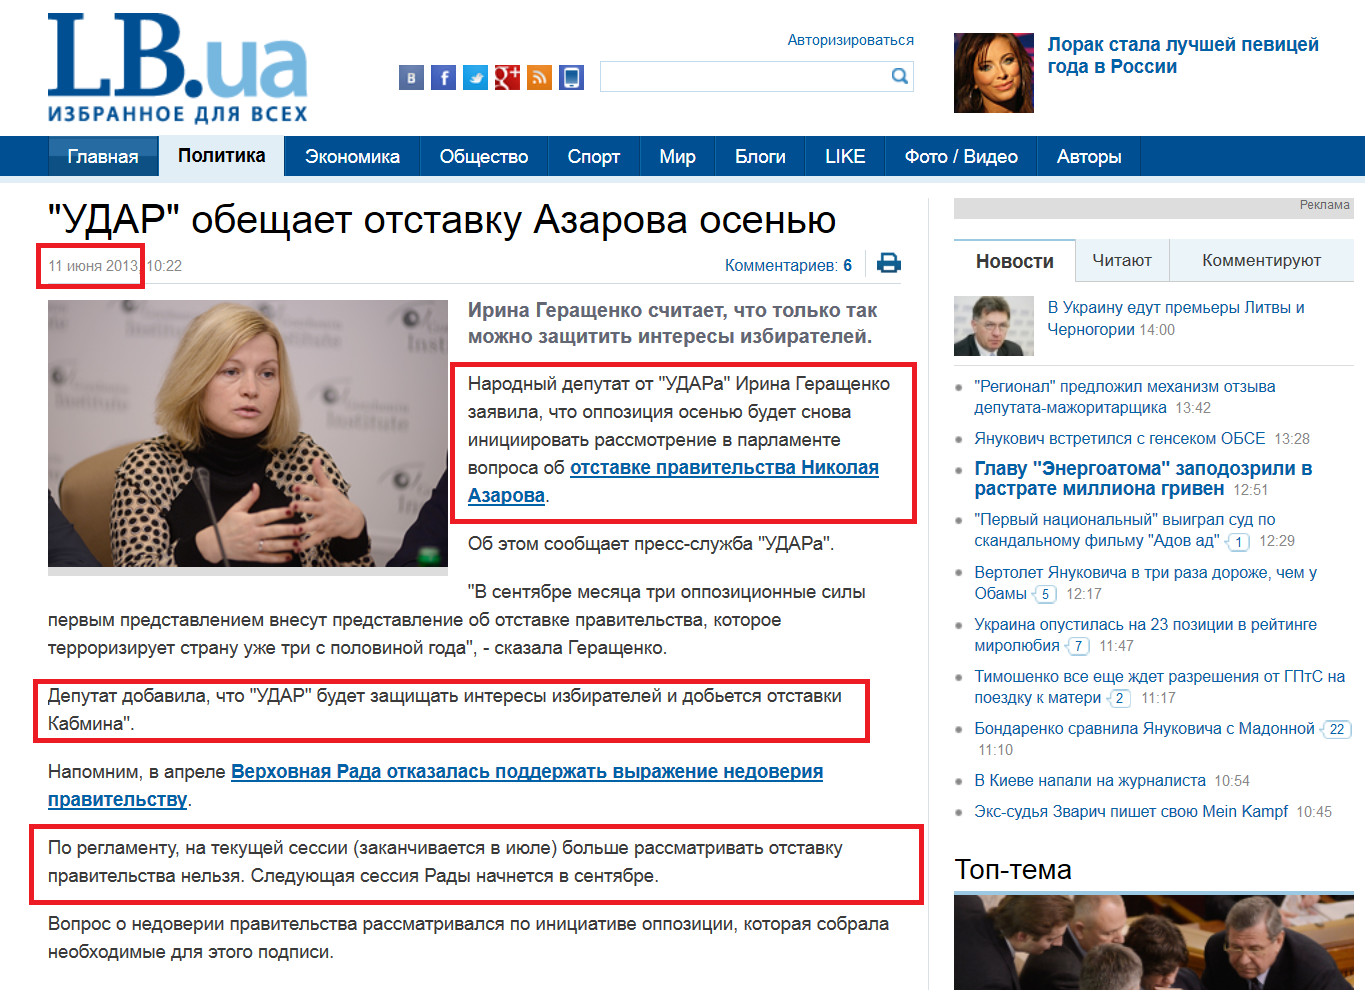 http://lb.ua/news/2013/06/11/205401_udar_obeshchaet_otstavku_azarova.html